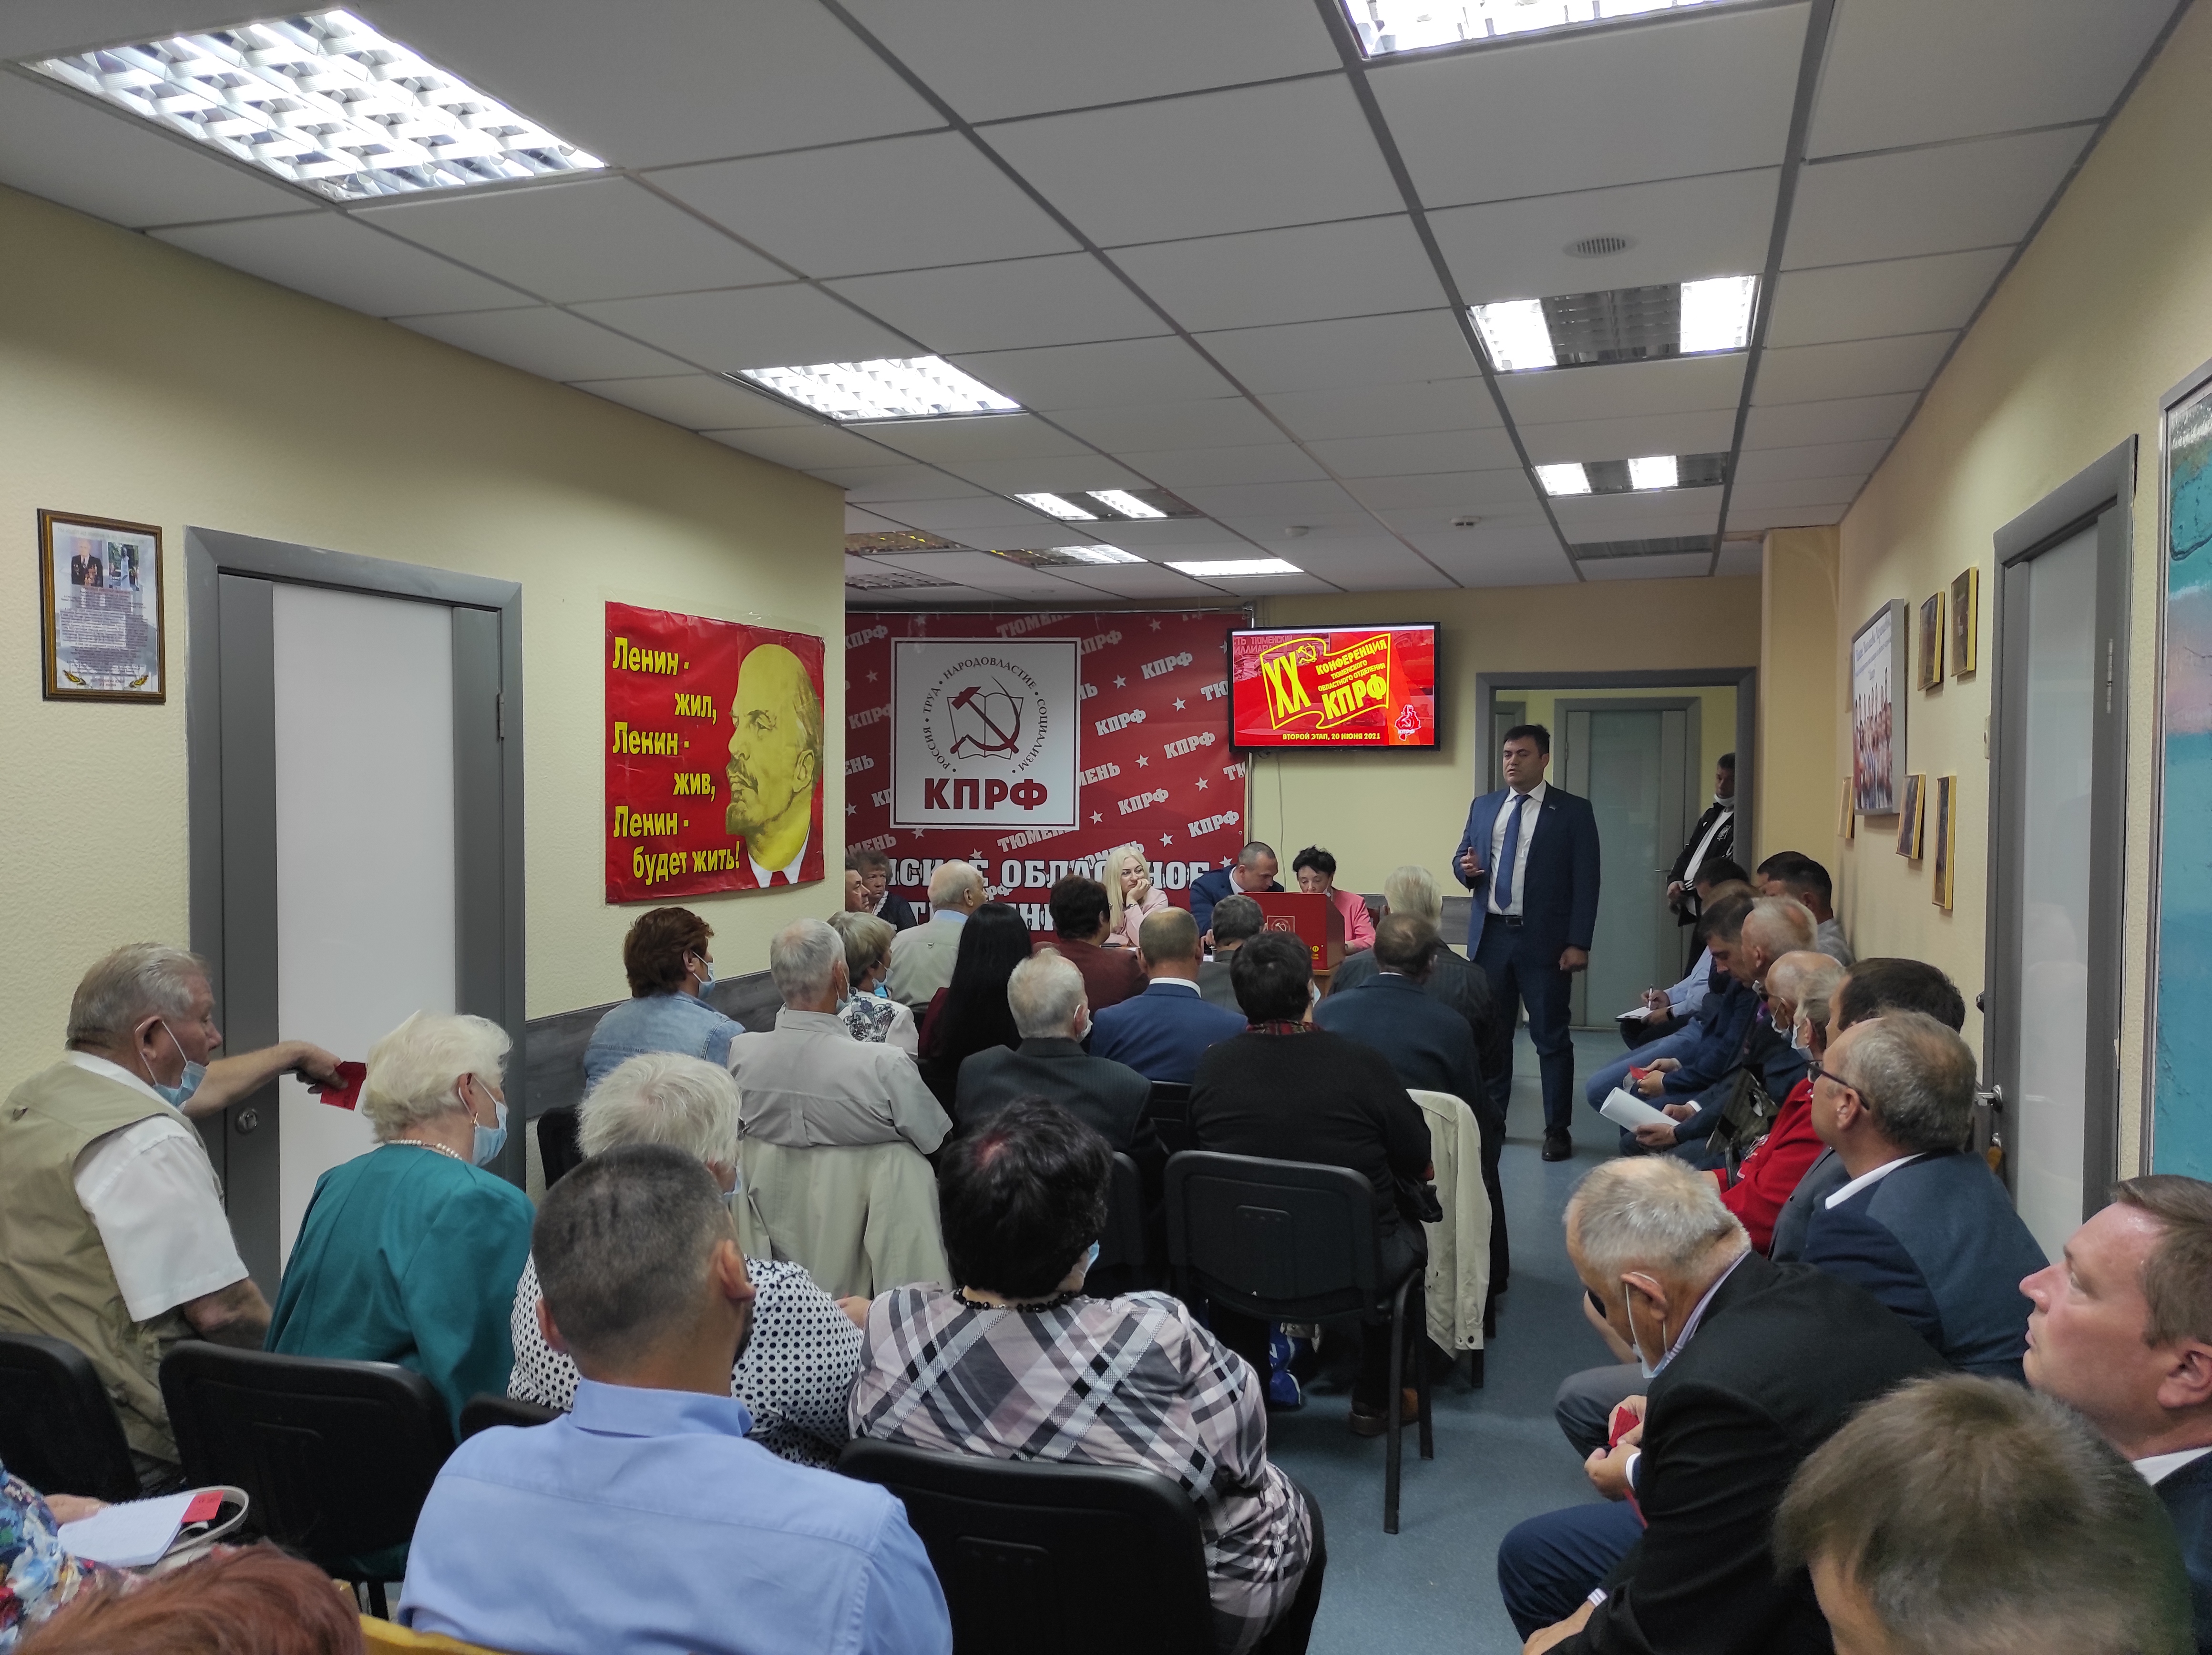 КПРФ выдвинула кандидатов в депутаты Тюменской областной Думы